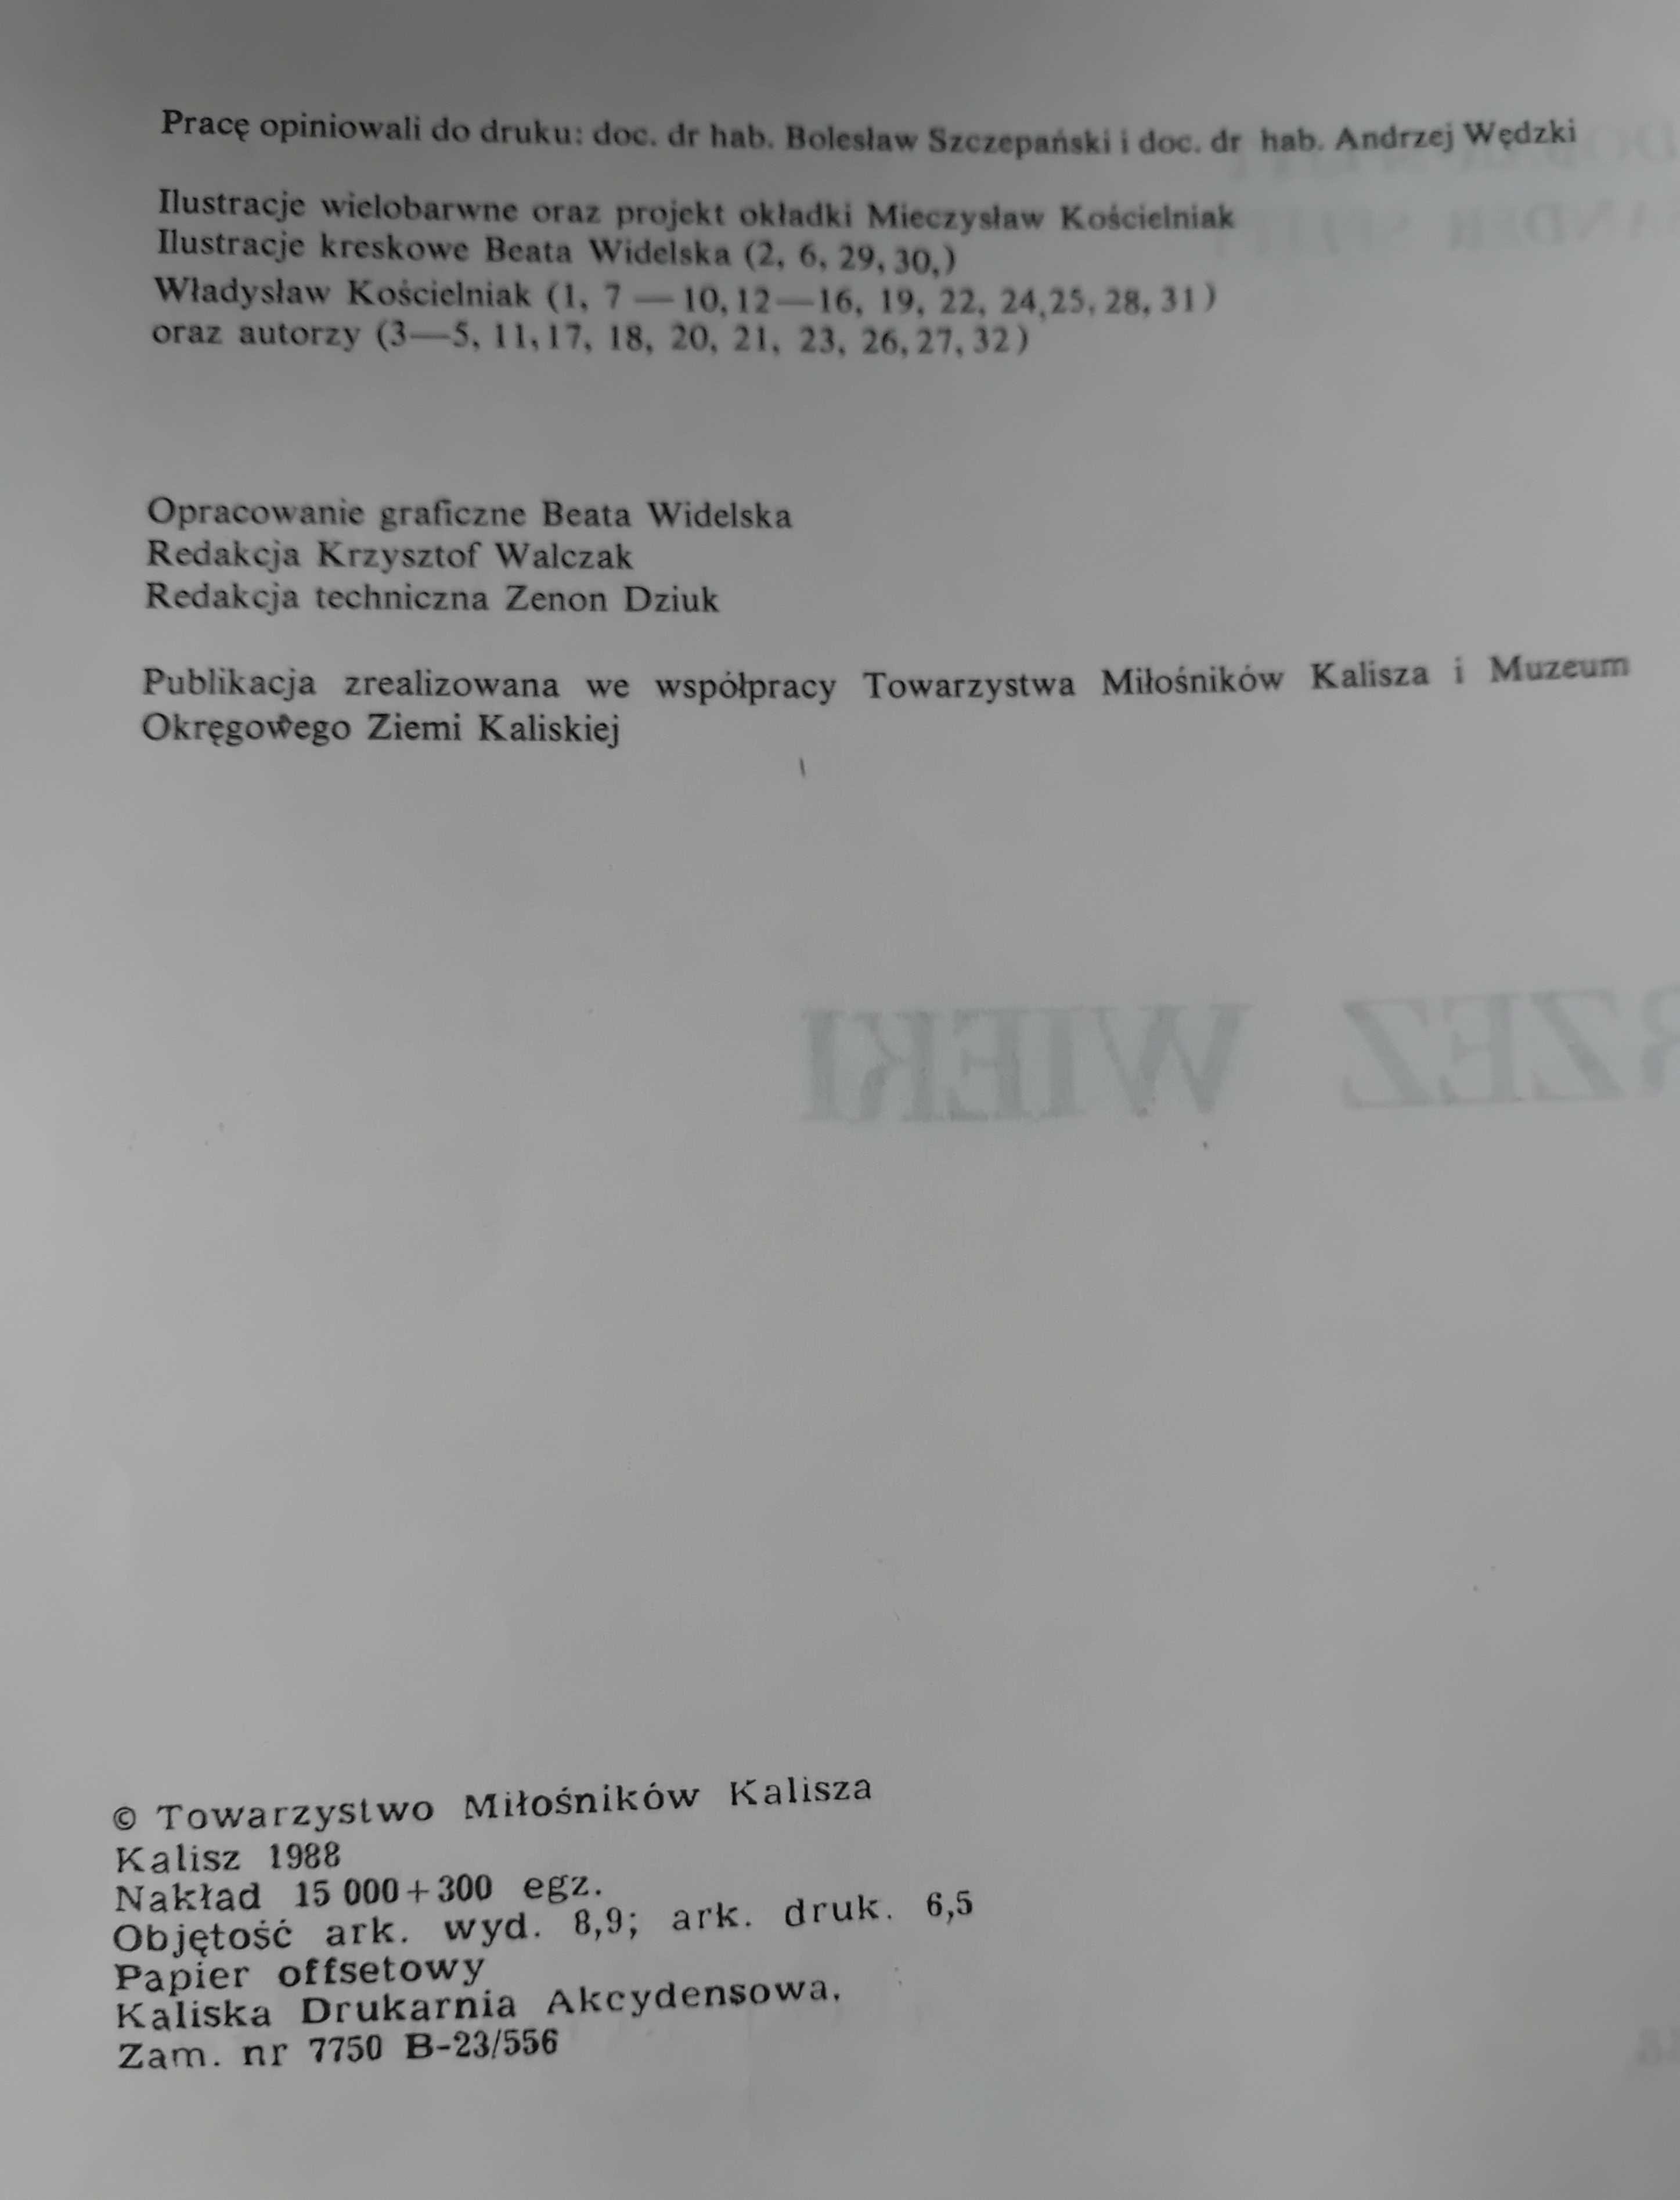 K. Dobak -Splitt, J. A. Splitt- Kalisz poprzez wieki. 1988. Wydanie I.